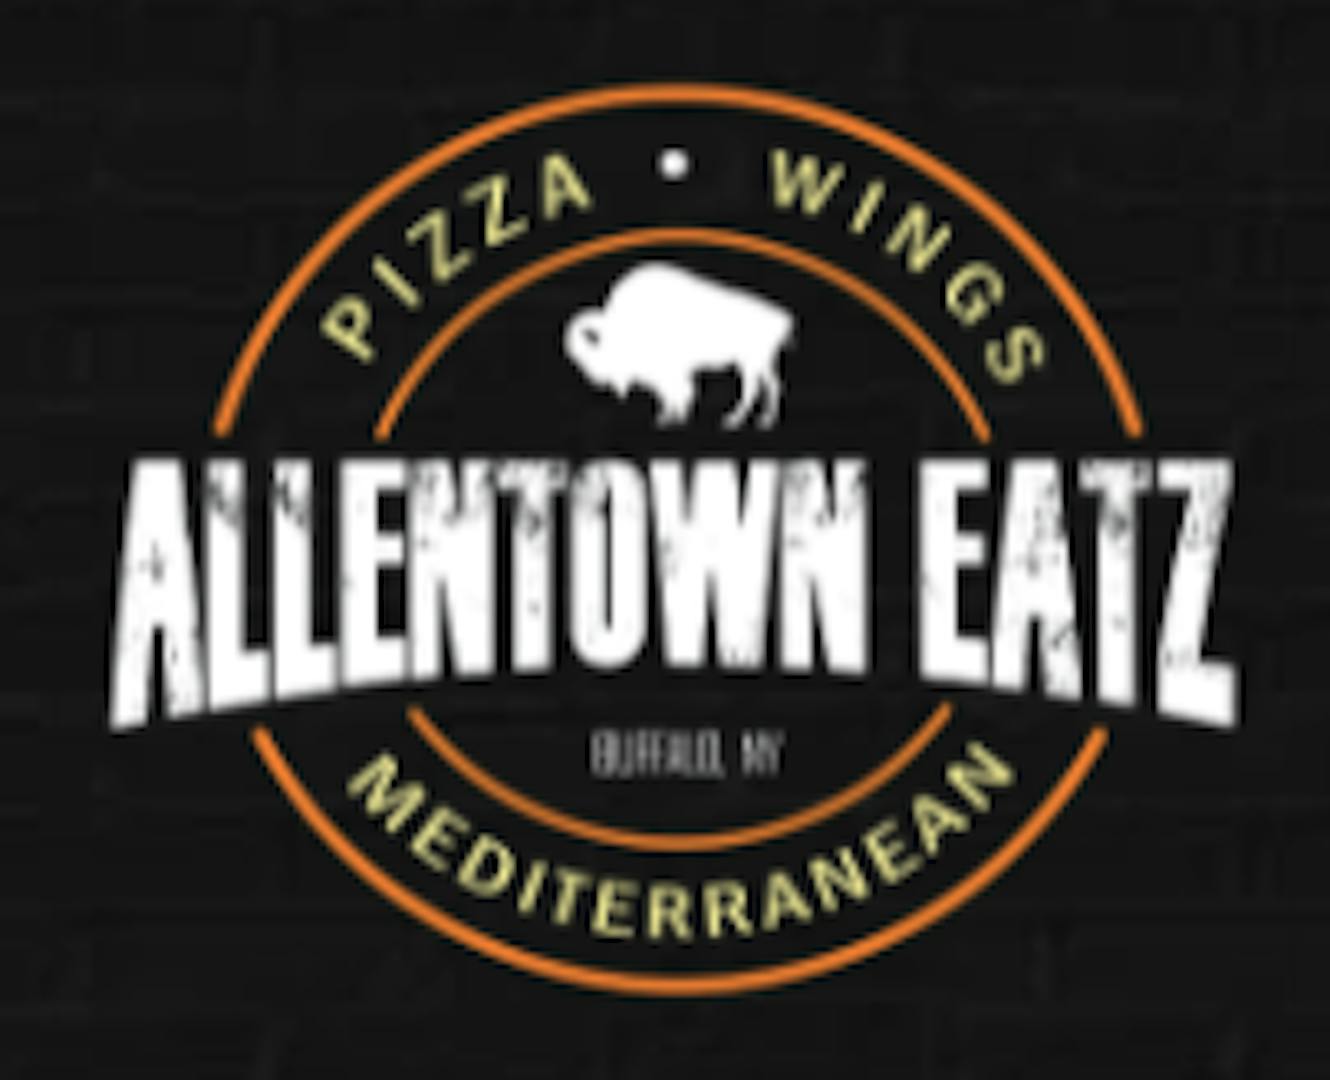 Allentown Eatz